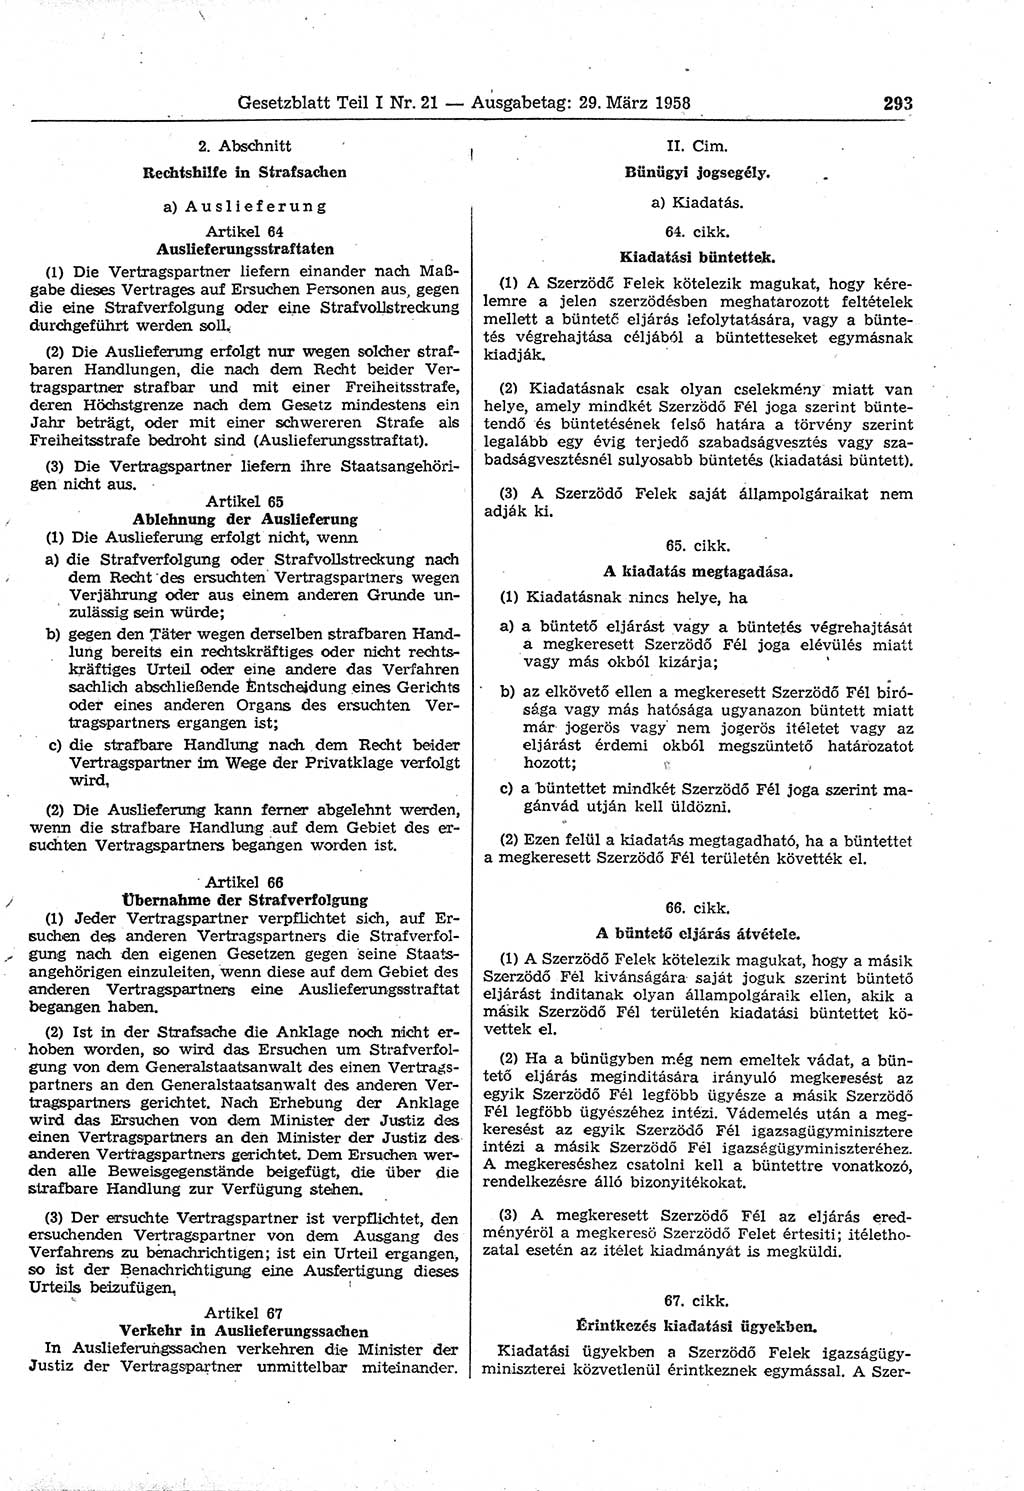 Gesetzblatt (GBl.) der Deutschen Demokratischen Republik (DDR) Teil Ⅰ 1958, Seite 293 (GBl. DDR Ⅰ 1958, S. 293)